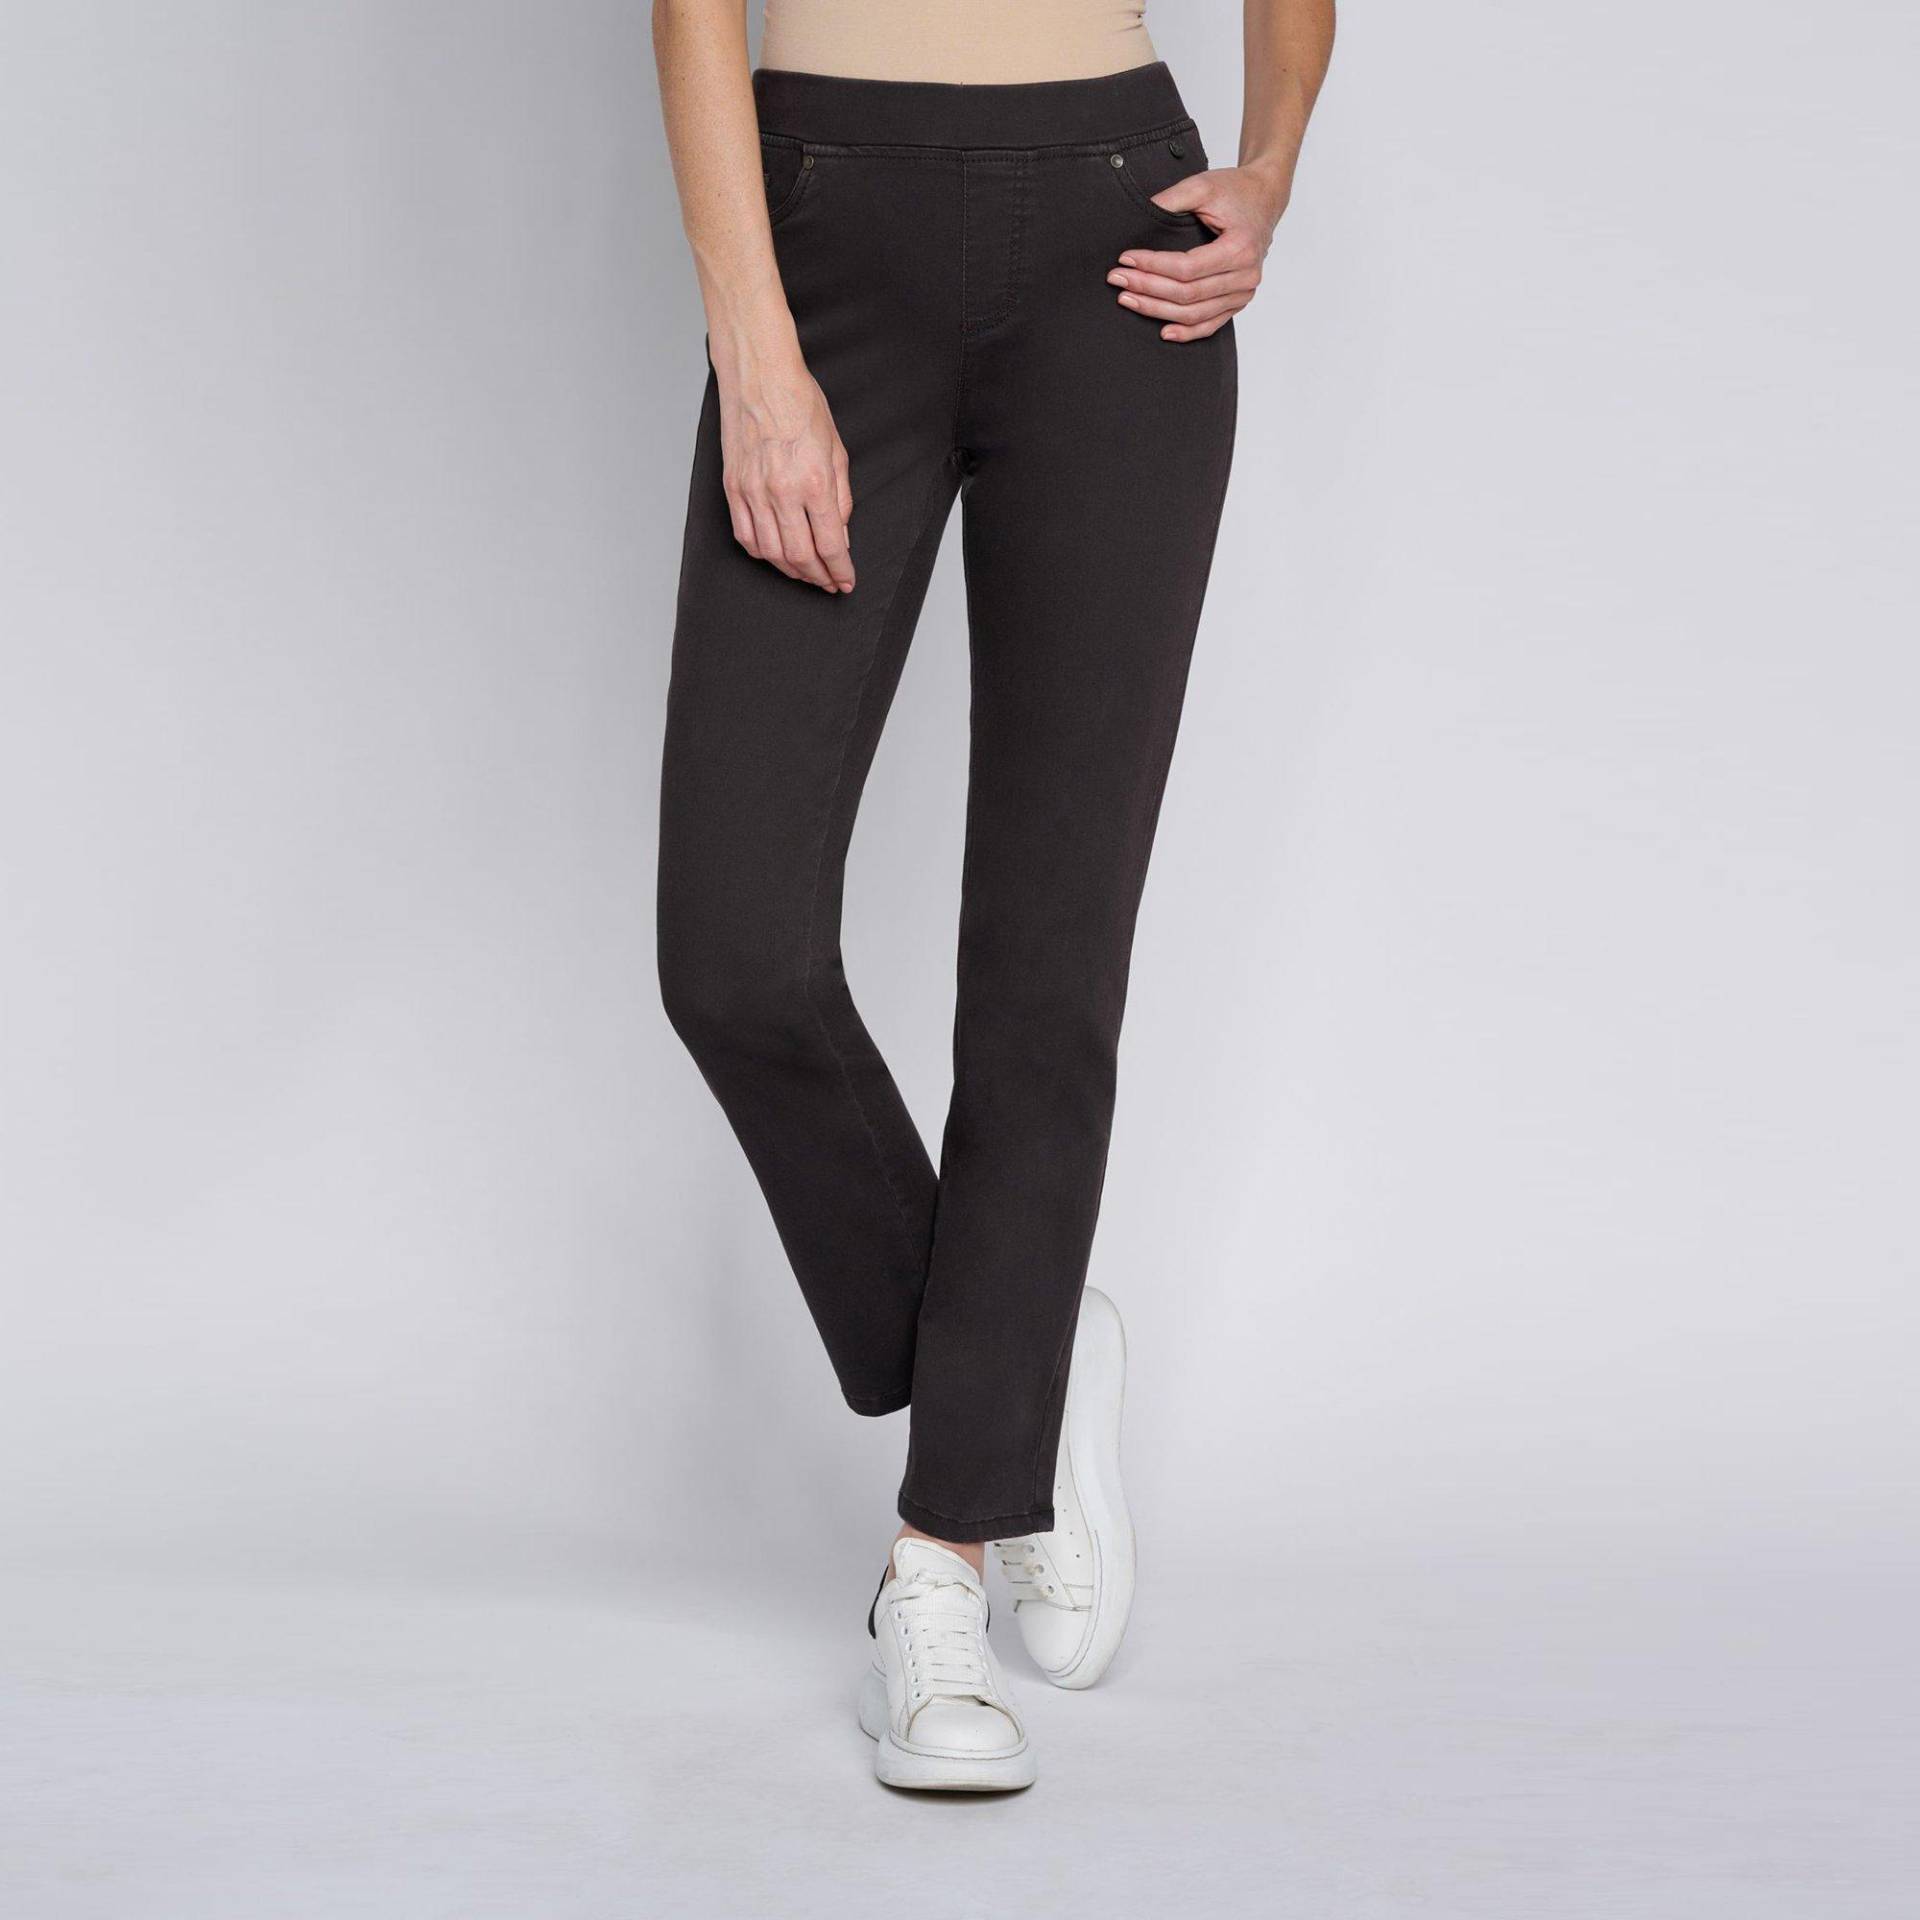 Jeans, Slim Fit Damen Black 40 von ANNA MONTANA